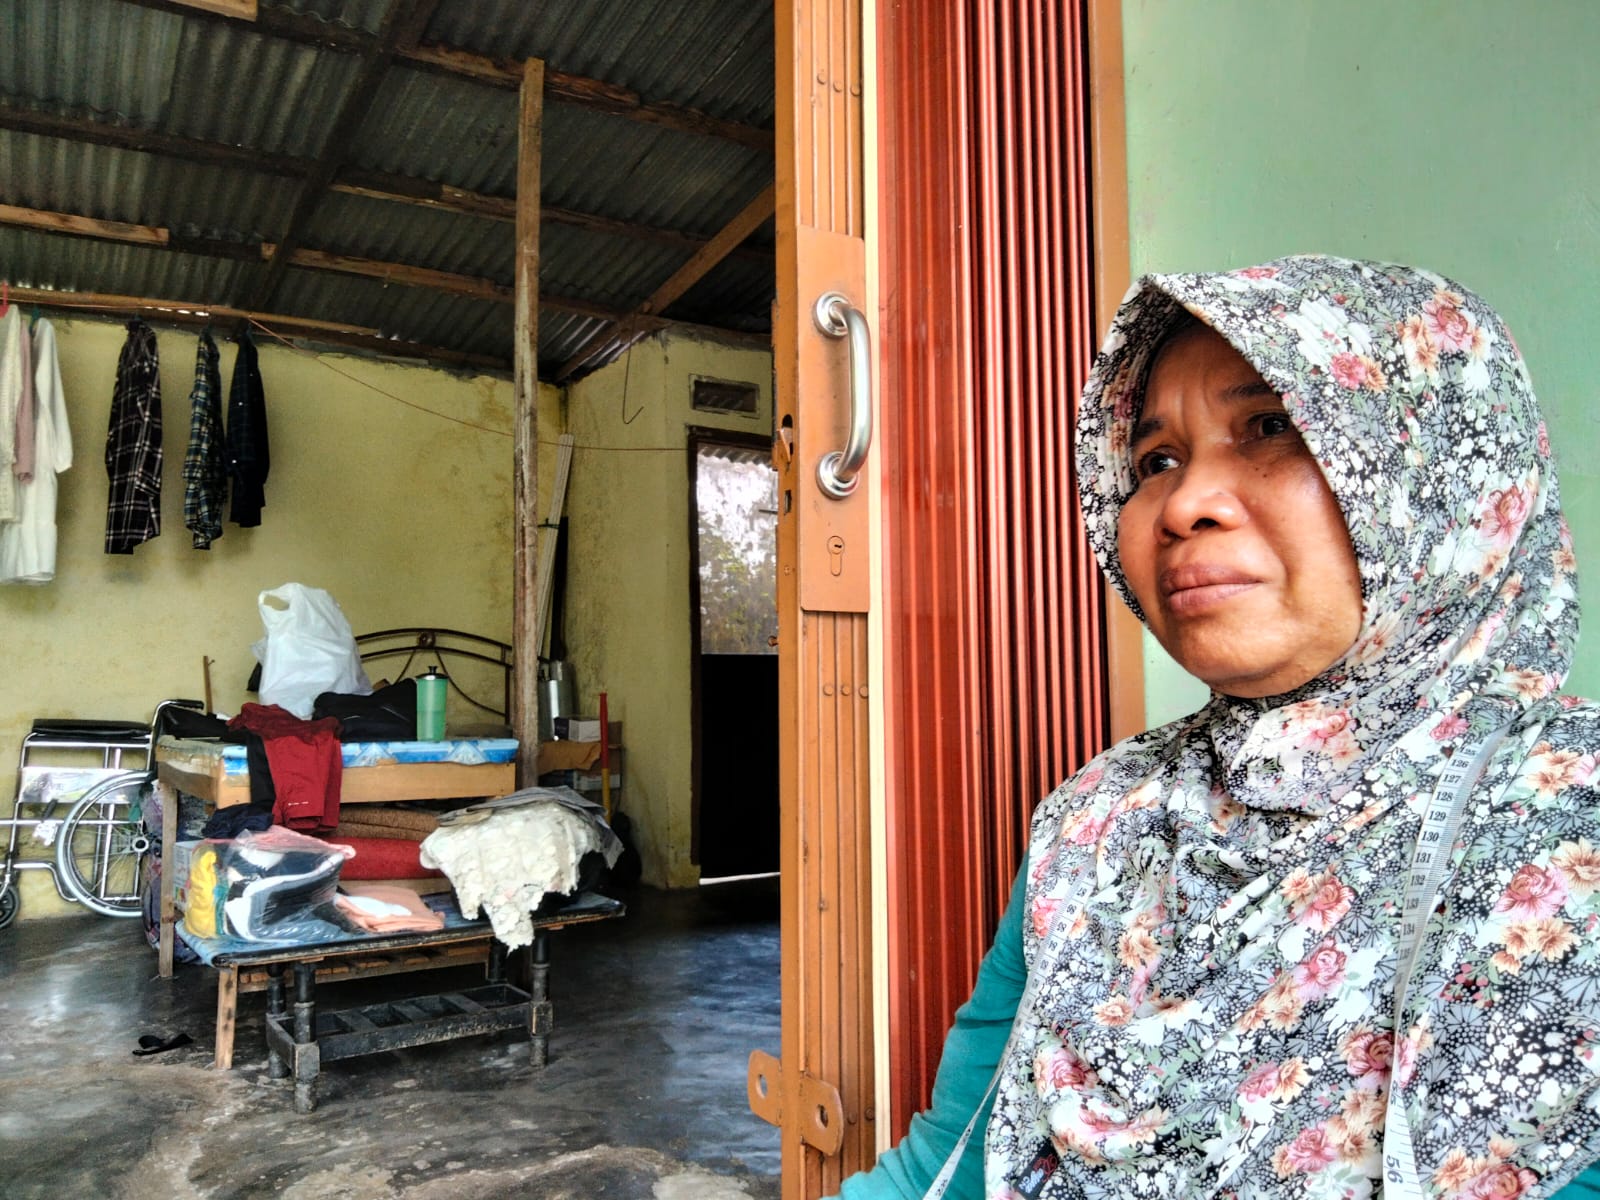 Warga Kota Bengkulu Ditipu Jutaan Rupiah, Pelakunya Mengaku Anggota Polisi